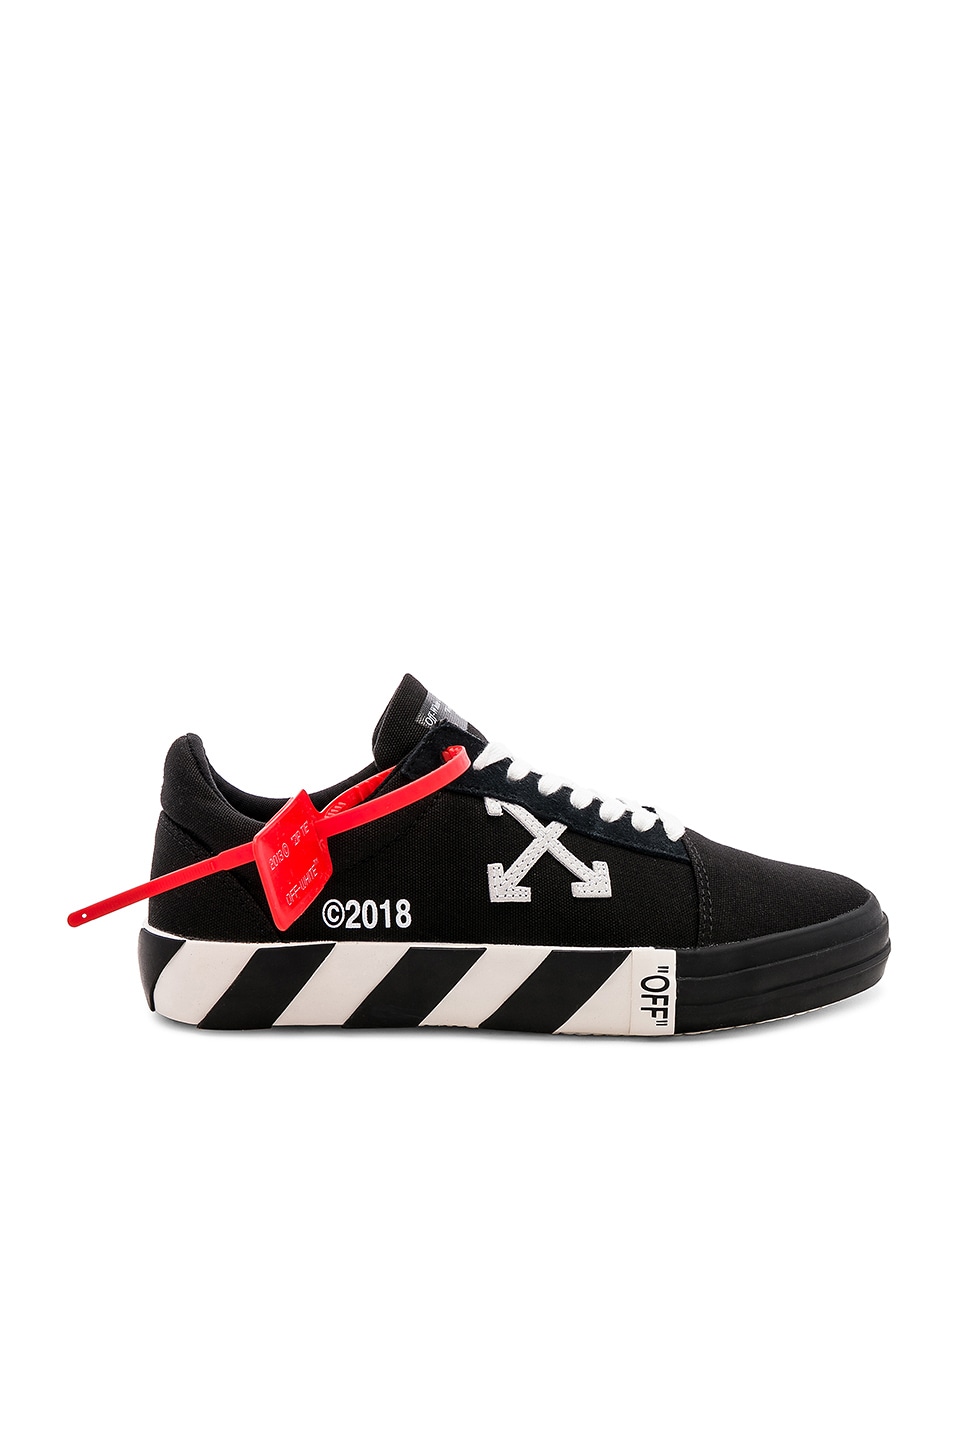 OFF-WHITE Vulc Low Sneaker in Black | REVOLVE